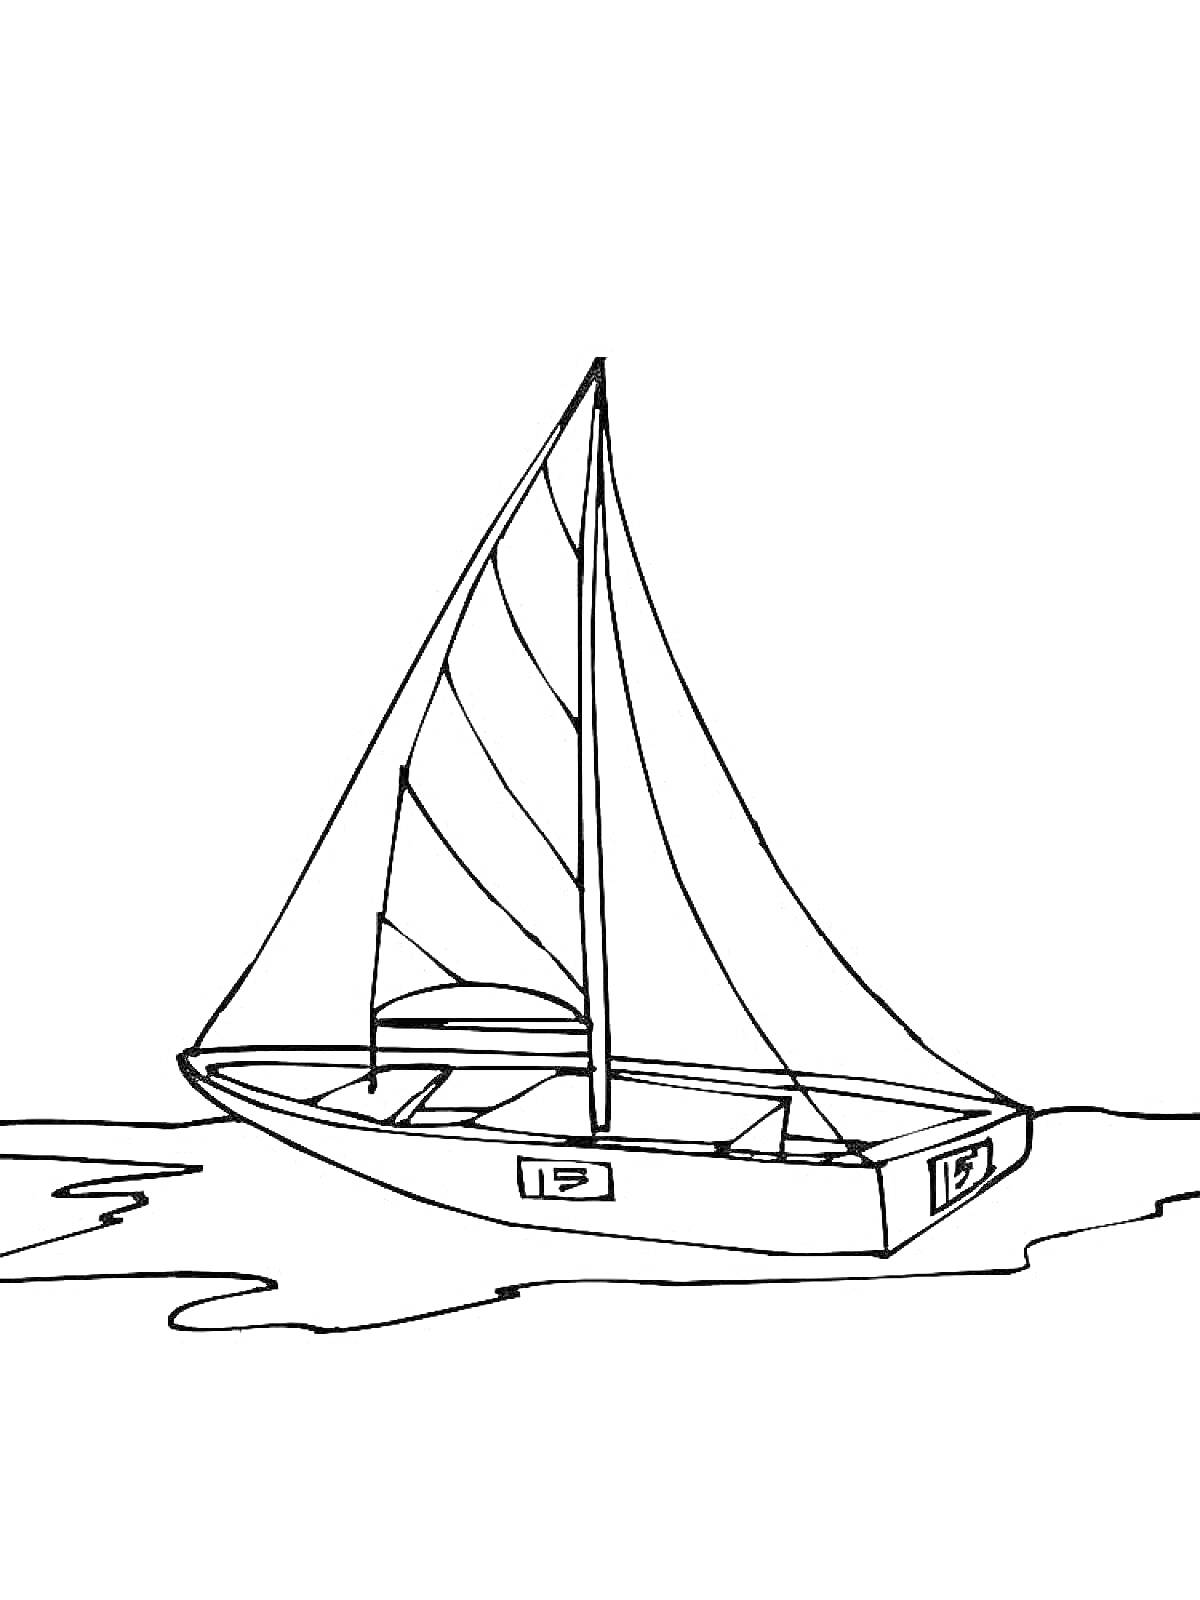 Раскраска Лодка с грот-марселем на воде